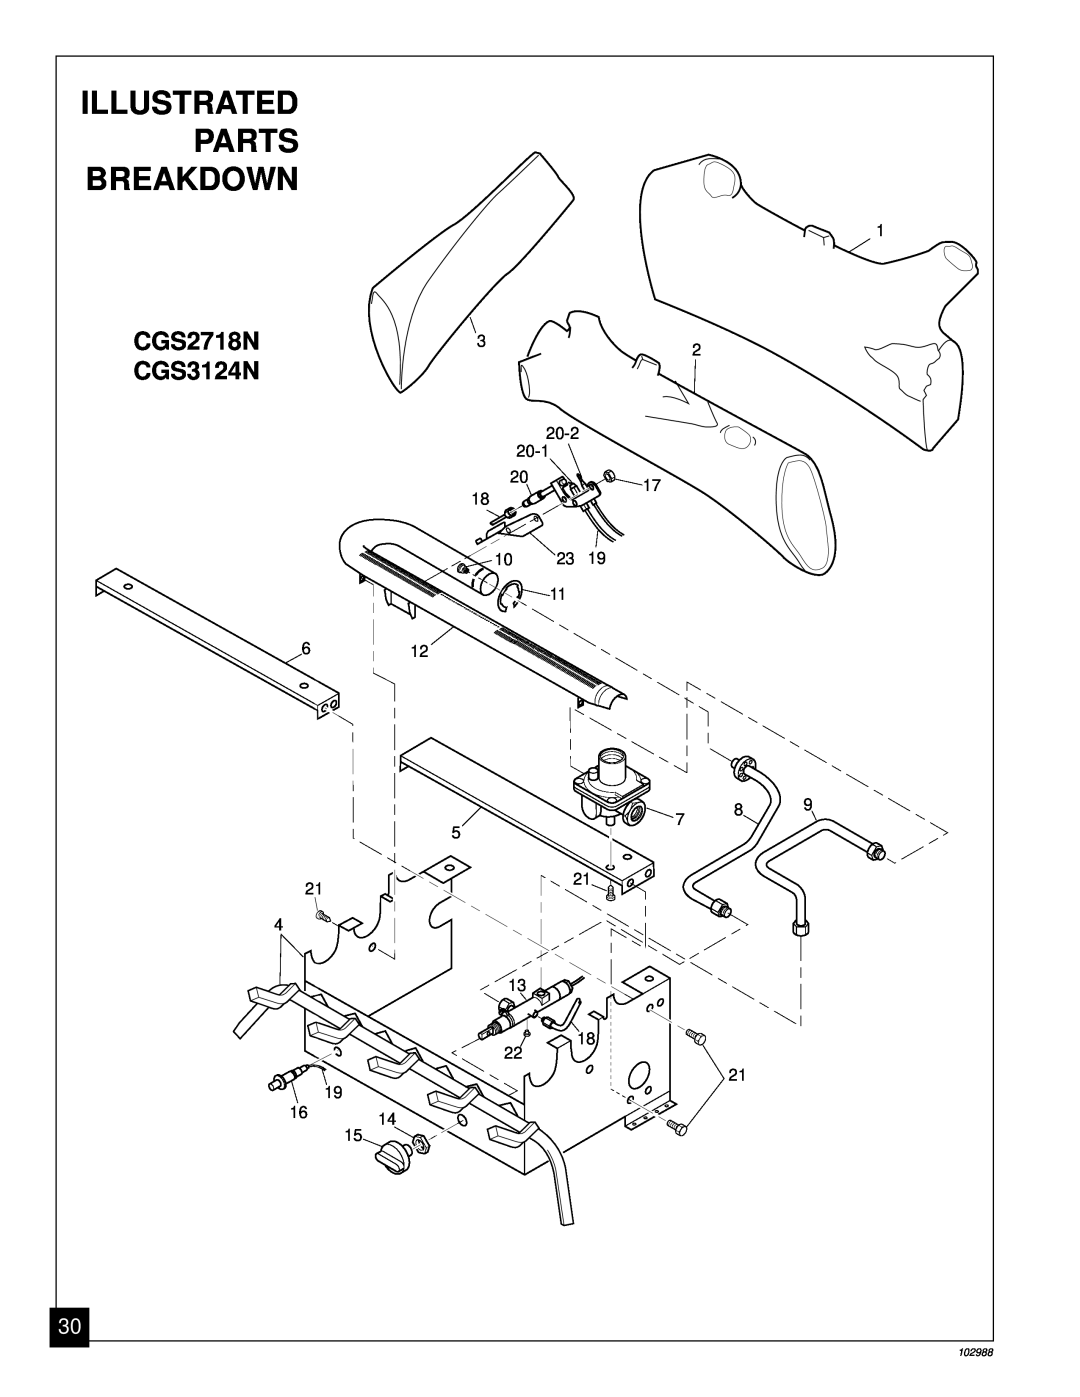 Desa CGS2718N installation manual Illustrated, Parts, Breakdown, CGS3124N 